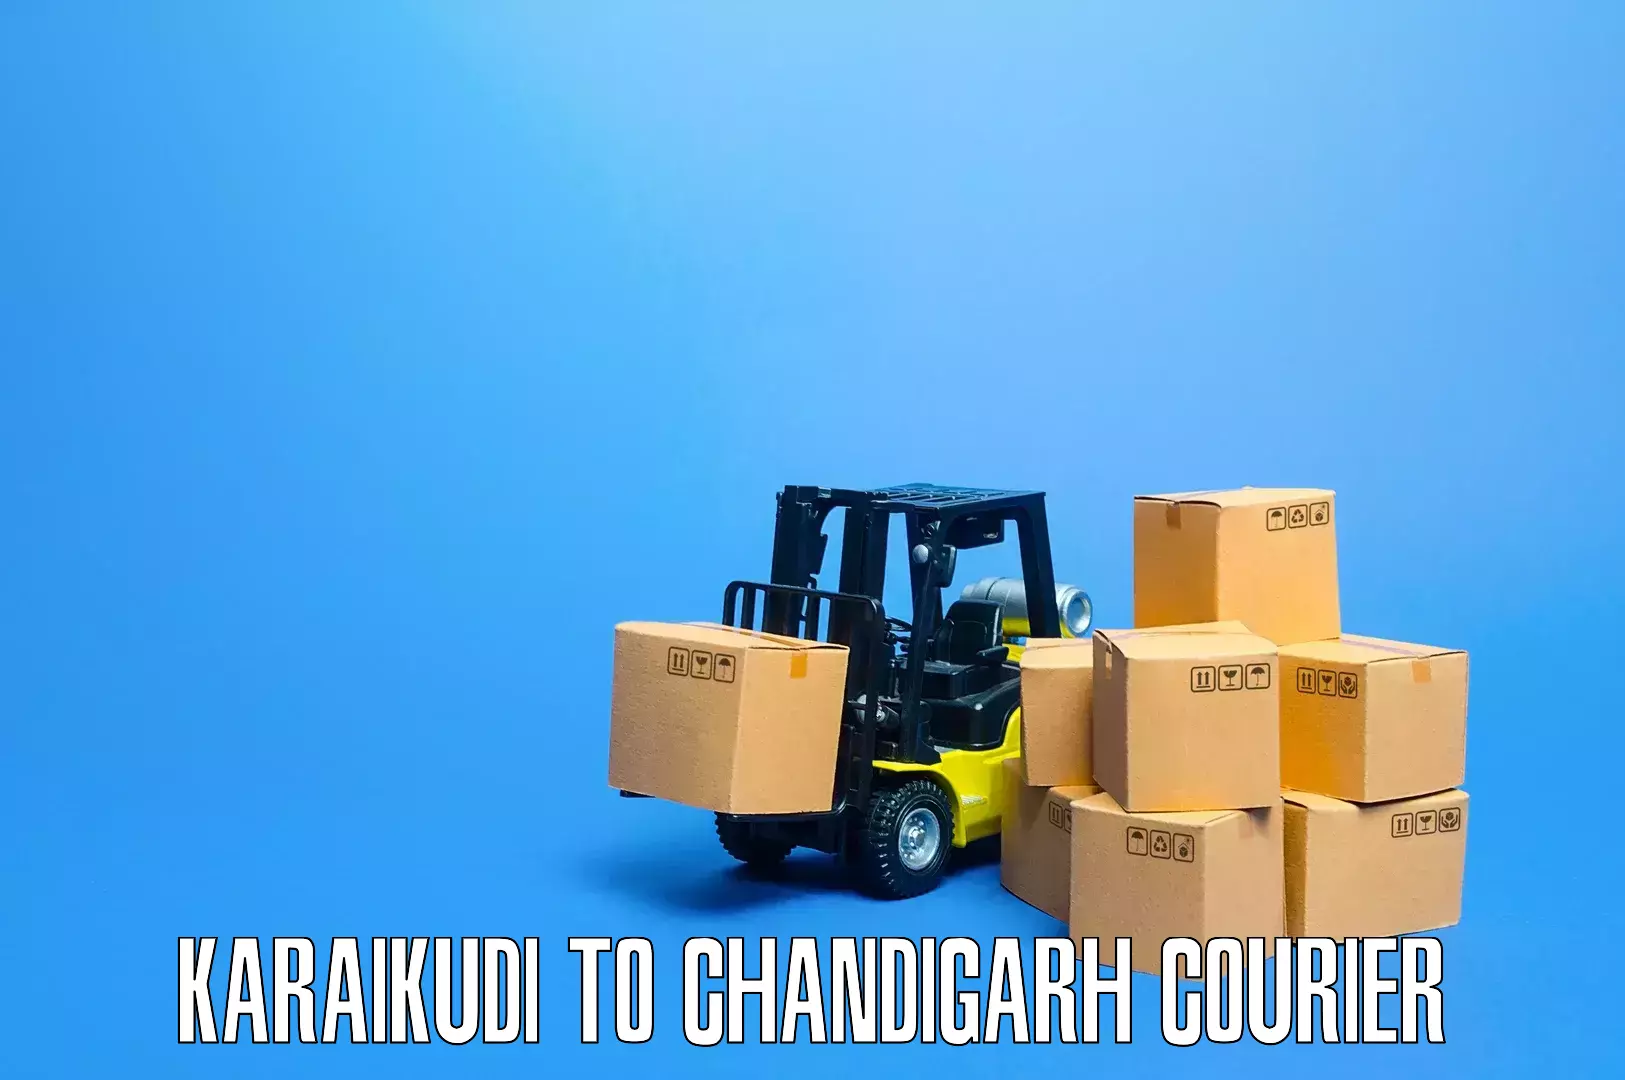 Dependable furniture transport Karaikudi to Chandigarh